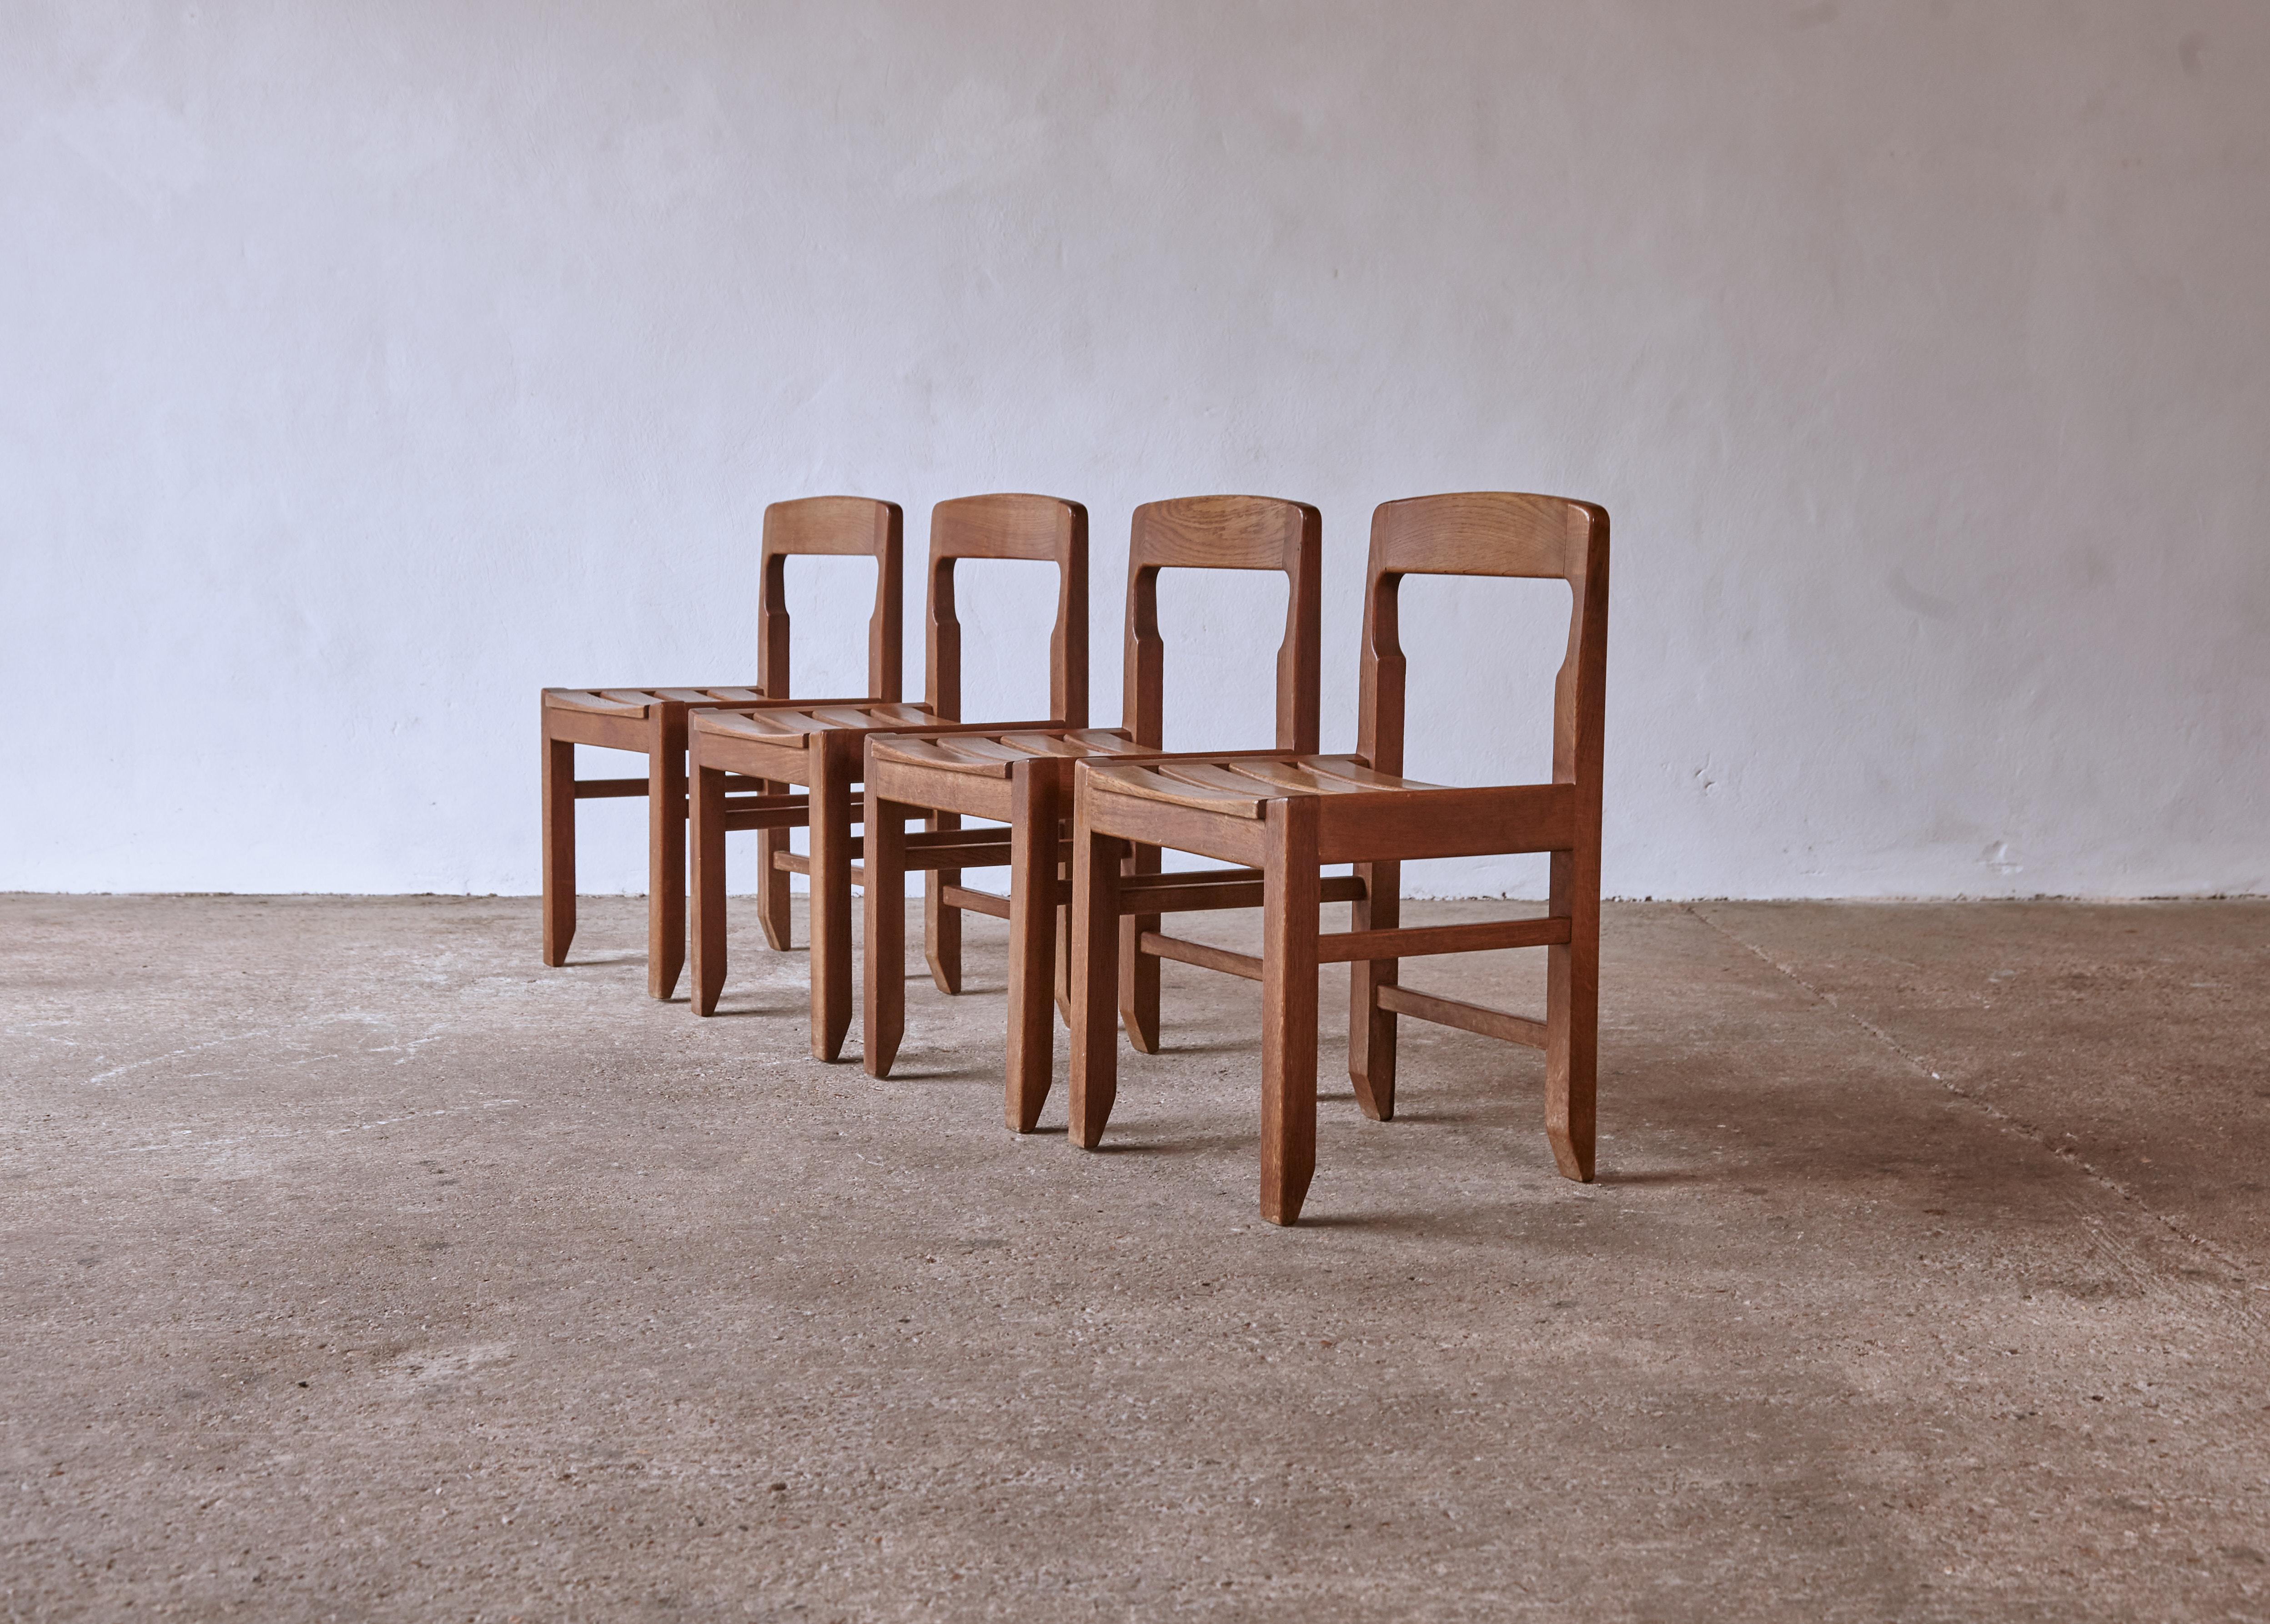 Un ensemble de quatre superbes chaises de salle à manger Guillerme et Chambron en chêne massif, fabriquées en France dans les années 1960. Structurellement en bon état avec un ton et une patine d'ensemble agréables et uniformes. Très beaux exemples